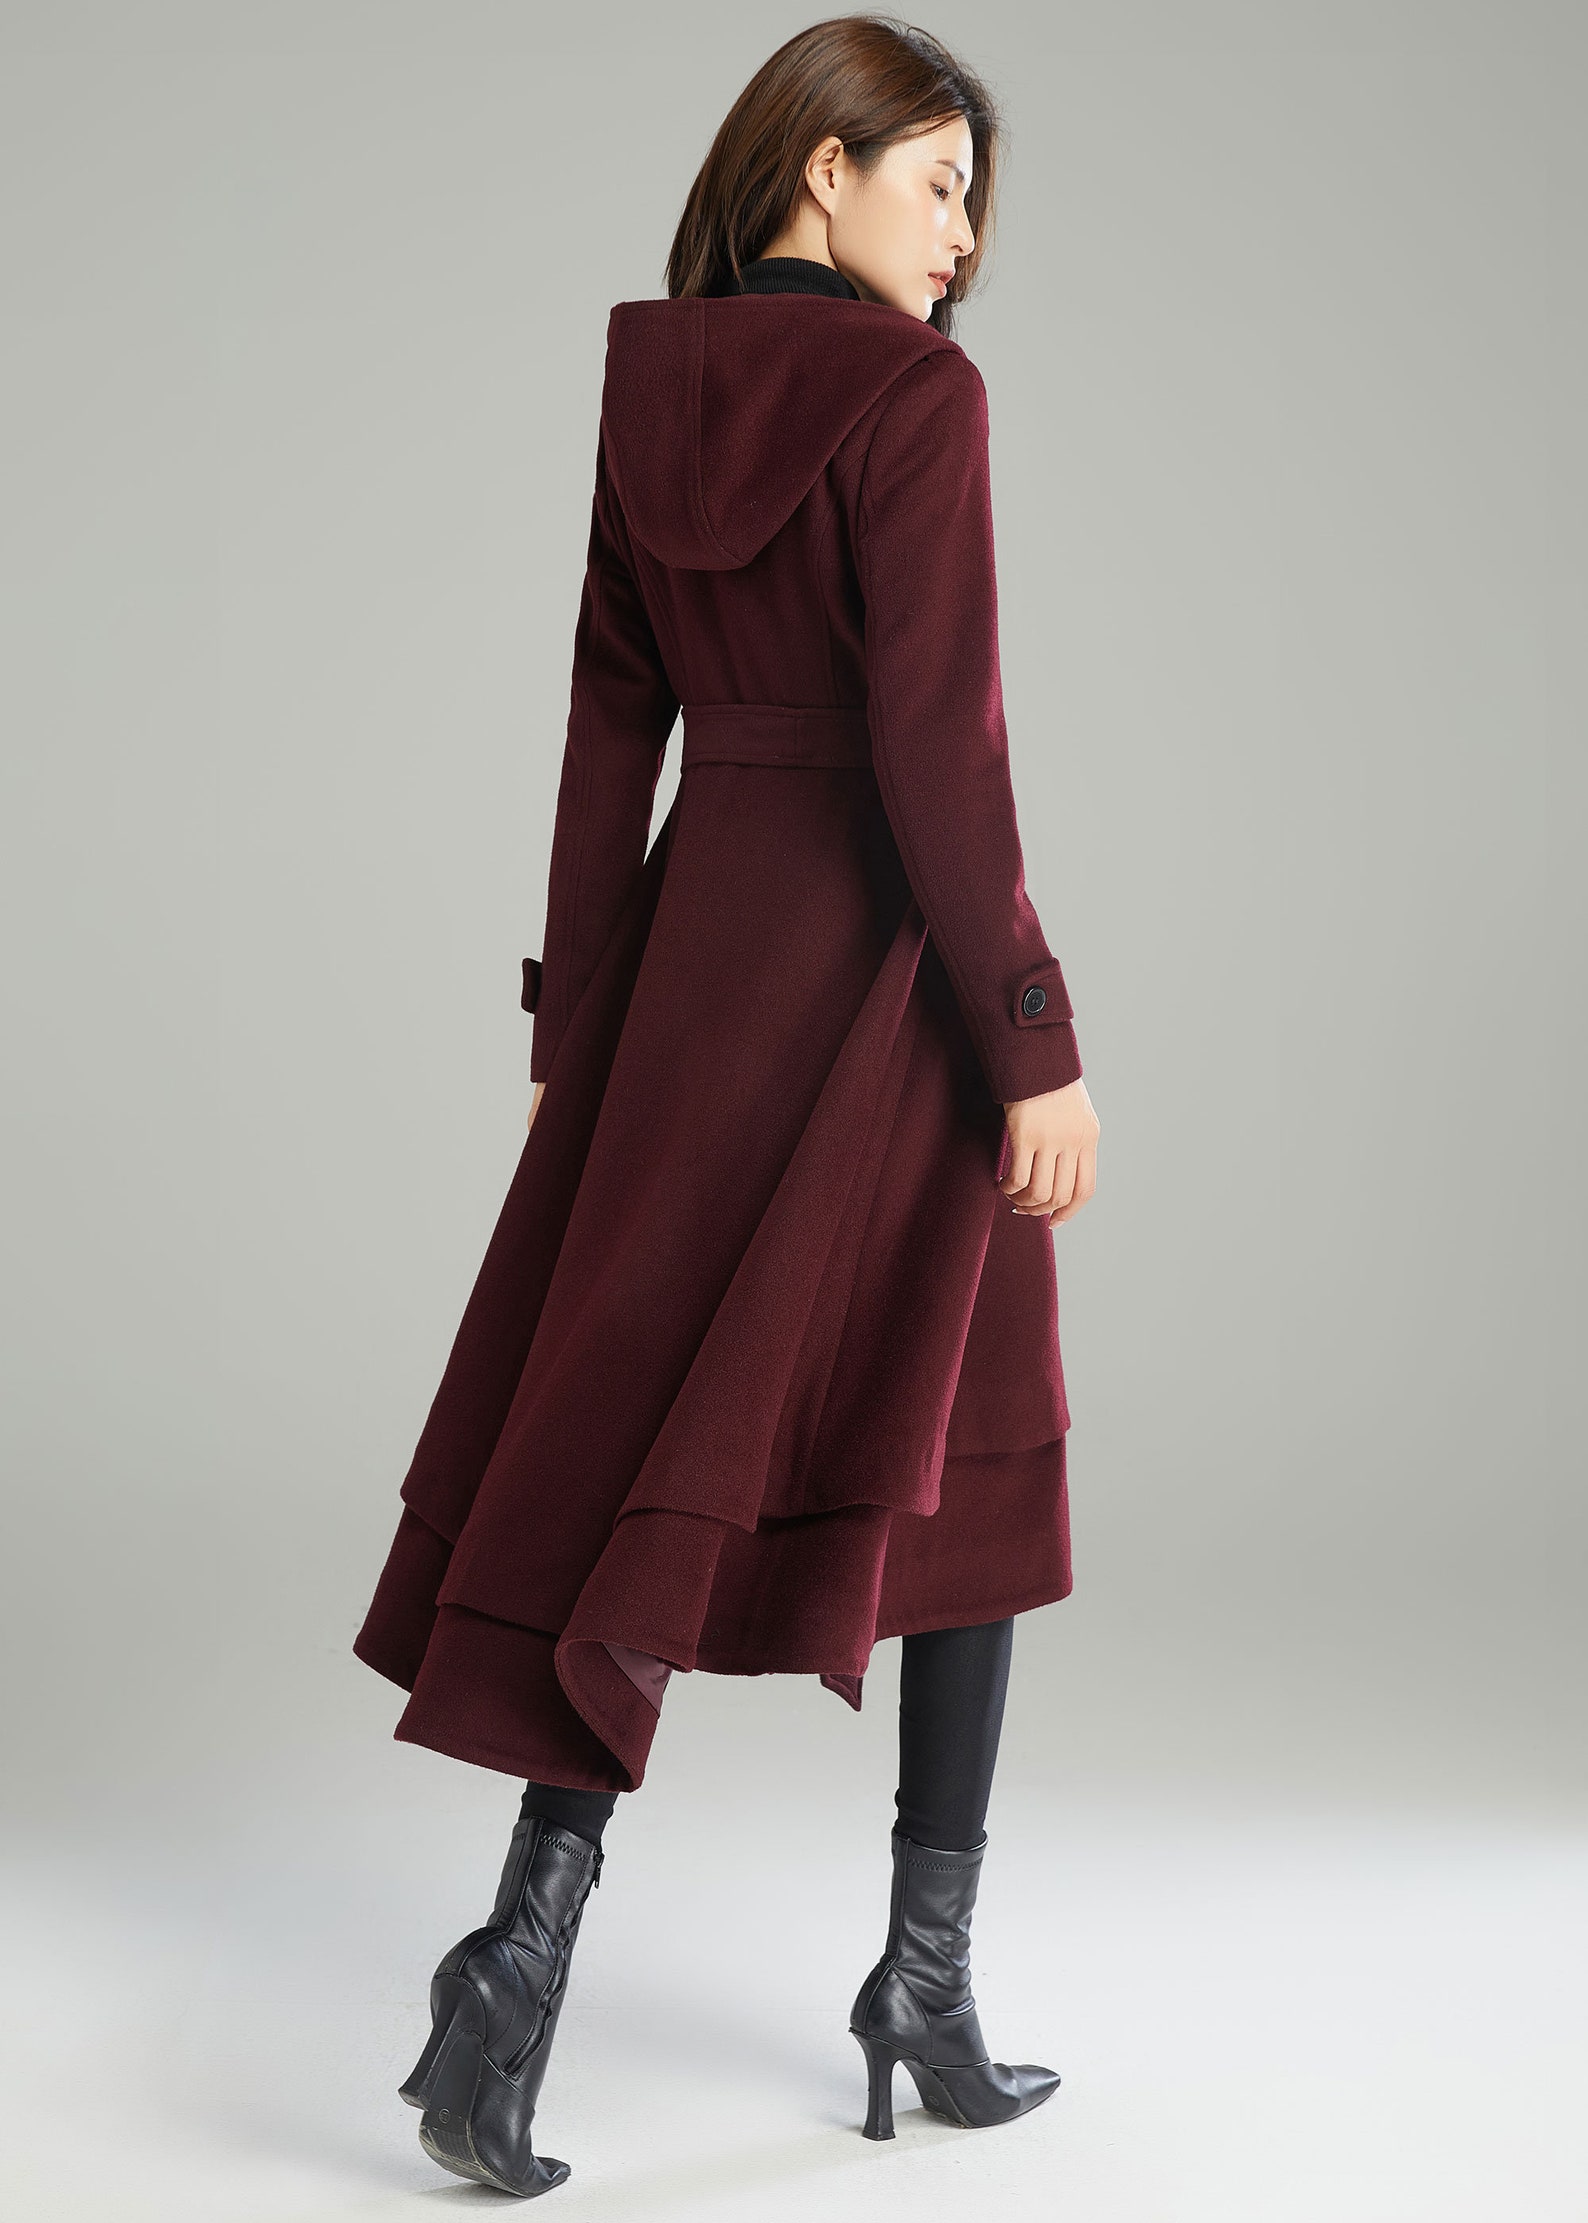 Wool Coat Wool Coat Women Hooded Wool Coat Asymmetrical - Etsy